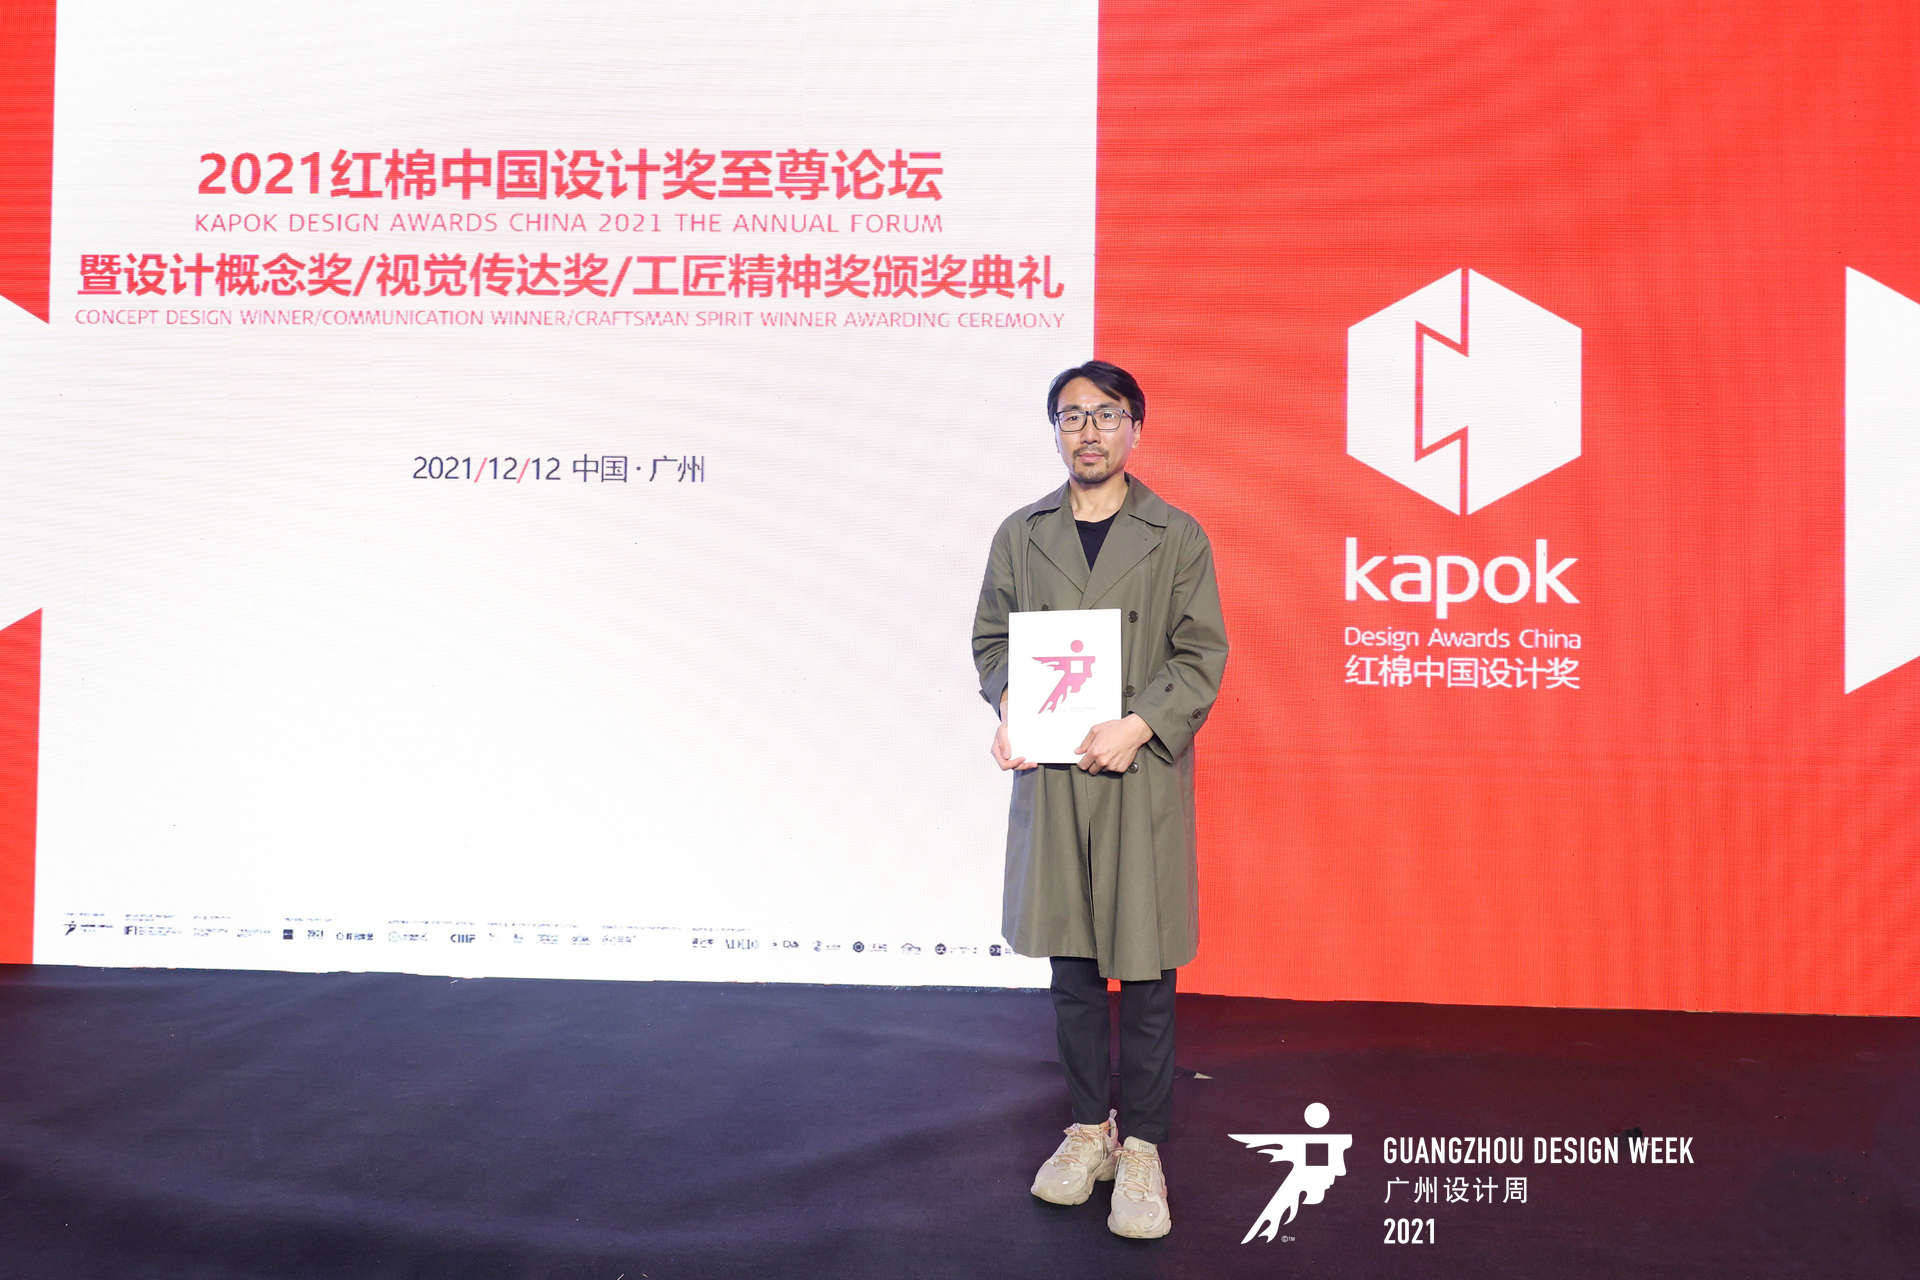 Oat Ofmom 燕麦牛奶包装设计 荣获红棉中国设计奖 2021年度视觉传达奖 